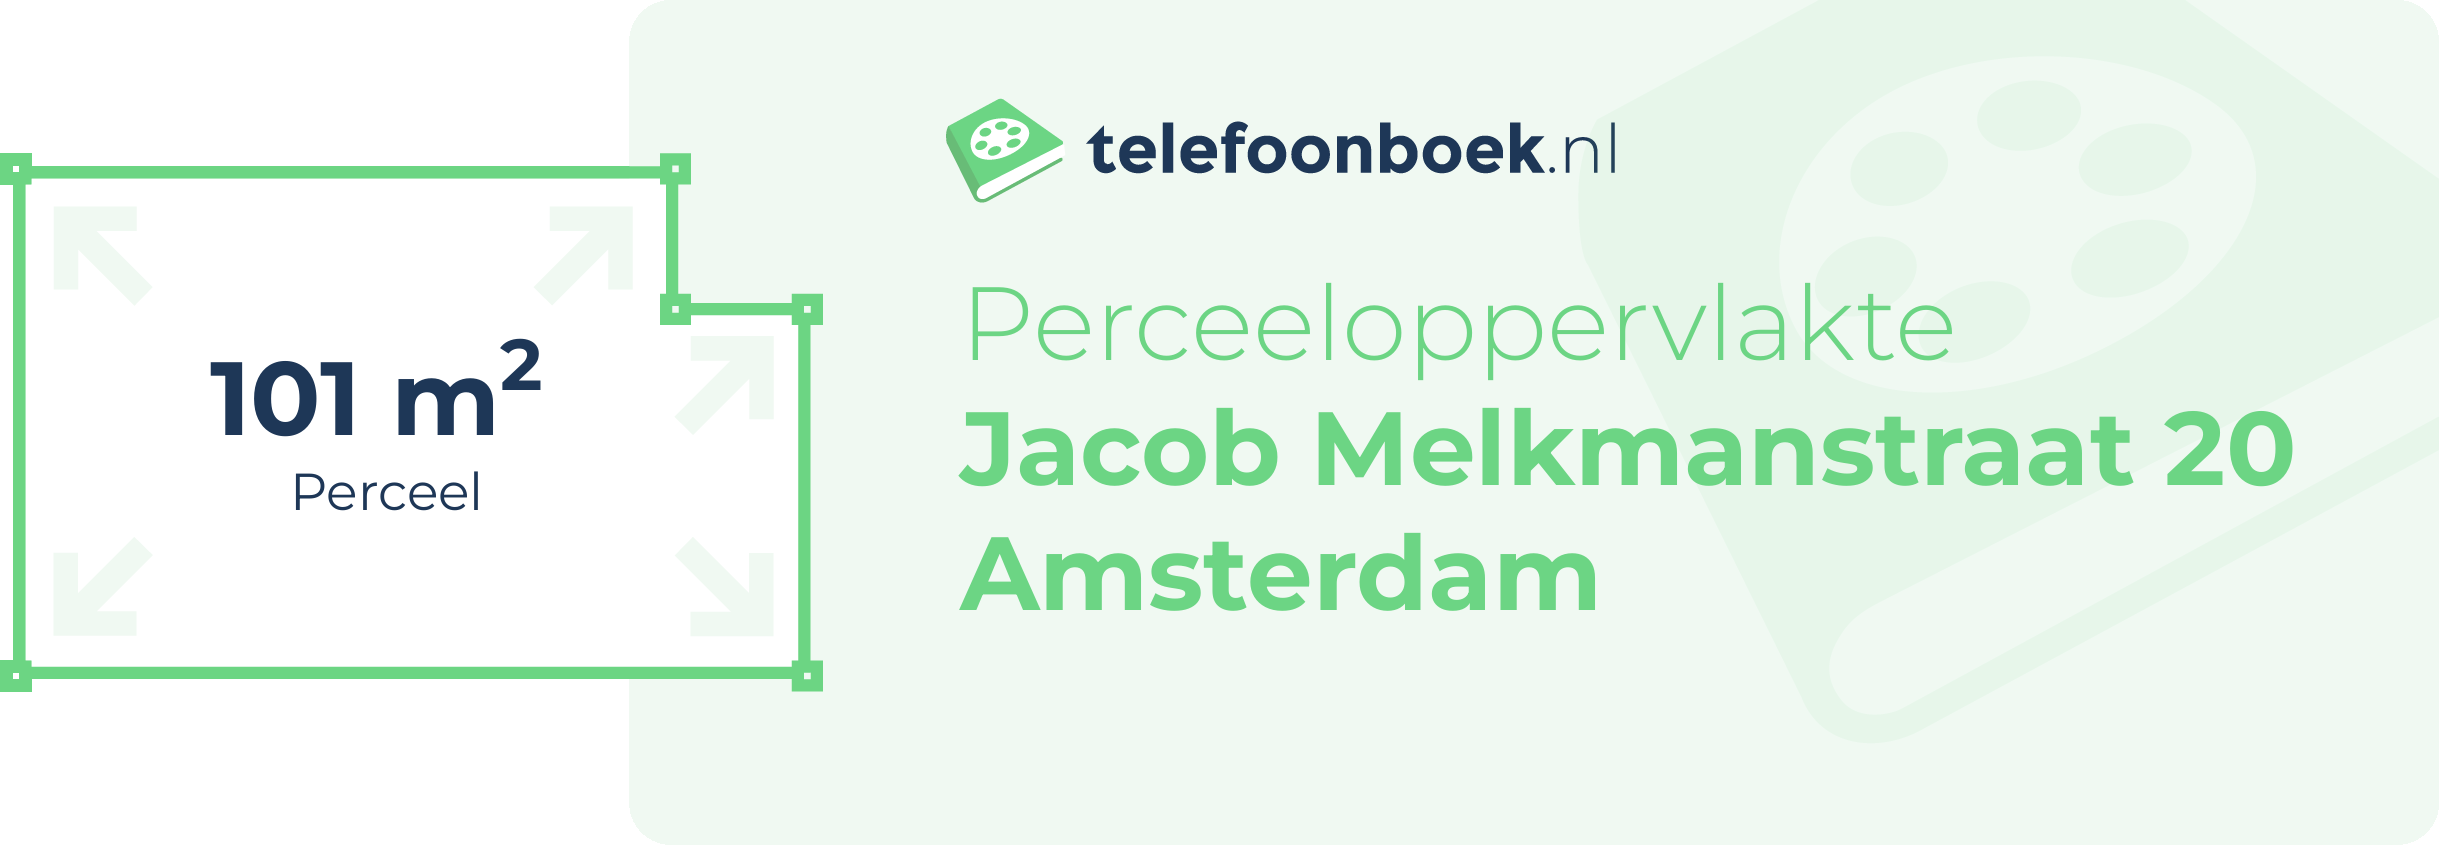 Perceeloppervlakte Jacob Melkmanstraat 20 Amsterdam